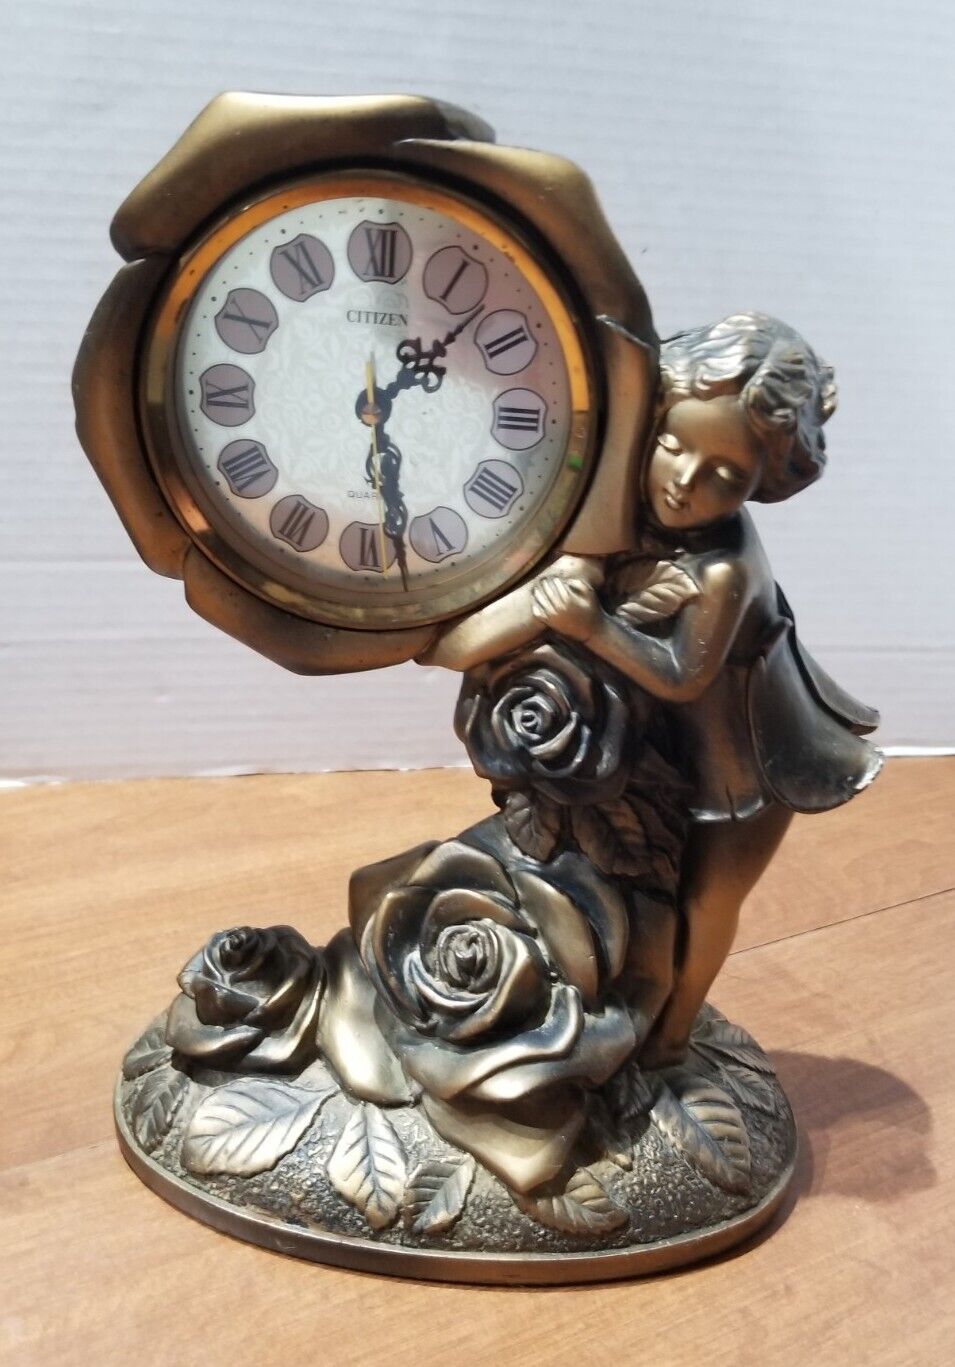 Antique Bronze Citizen/Quartz Mantel Clock - Girl/Roses Made in Japan